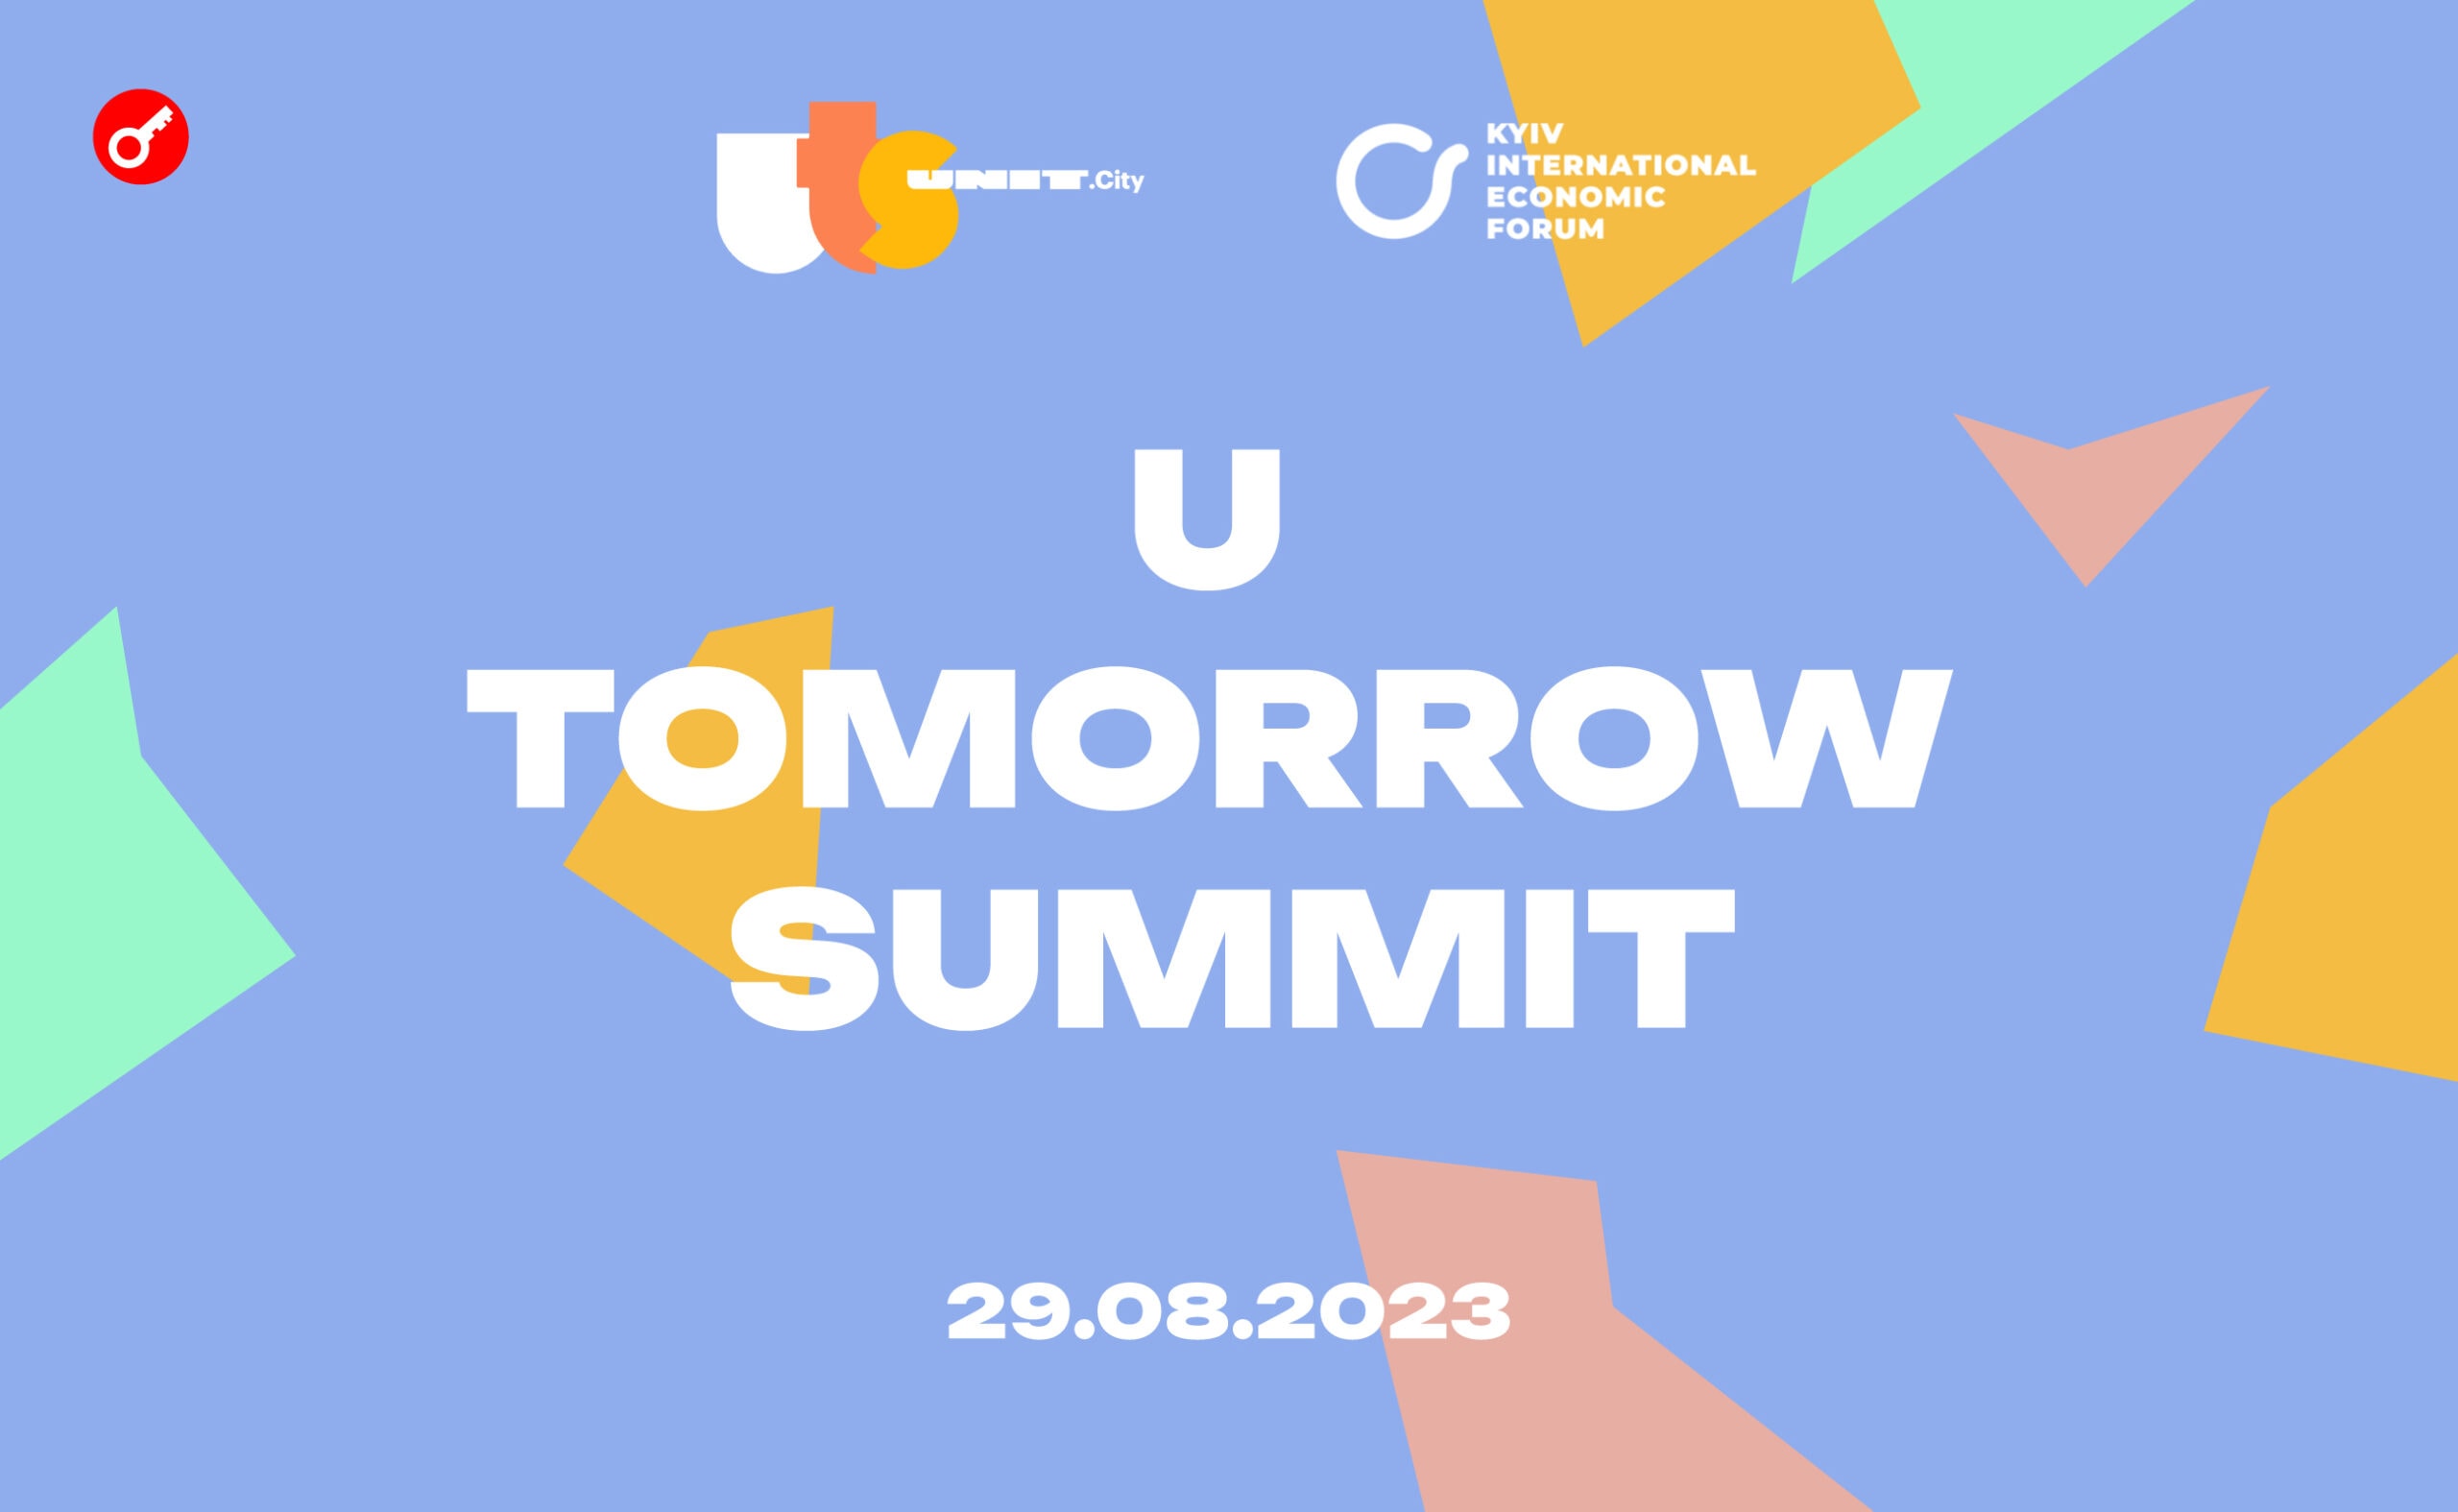 U Tomorrow Summit в Киеве объединит более 1000 предпринимателей, инвесторов и лидеров мнений. Заглавный коллаж новости.